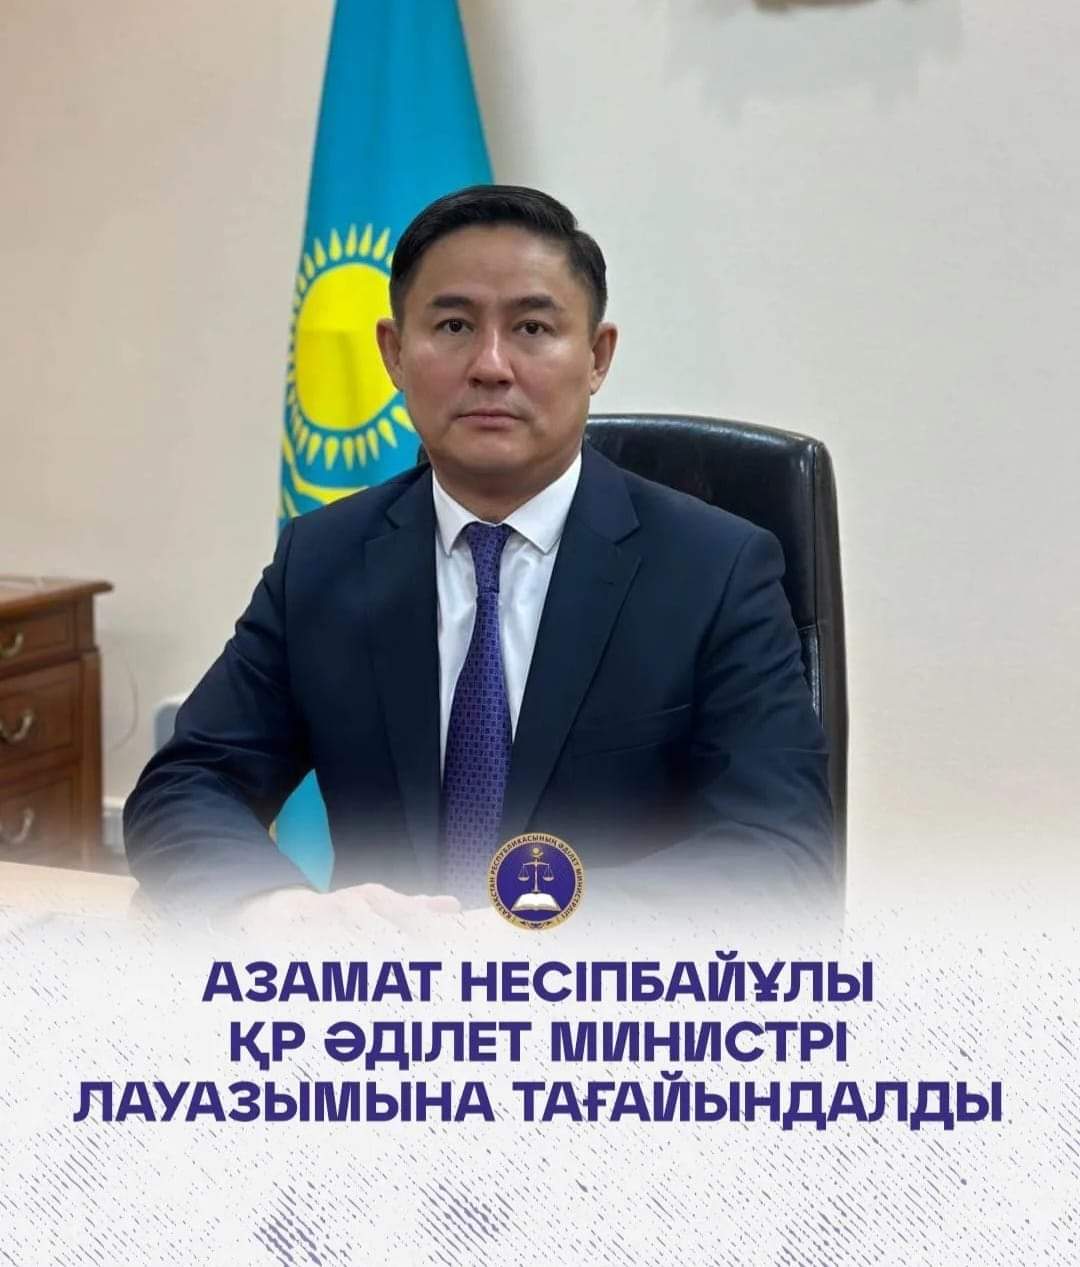 Ескараев Азамат Несипбаевич назначен Министром юстиции РК